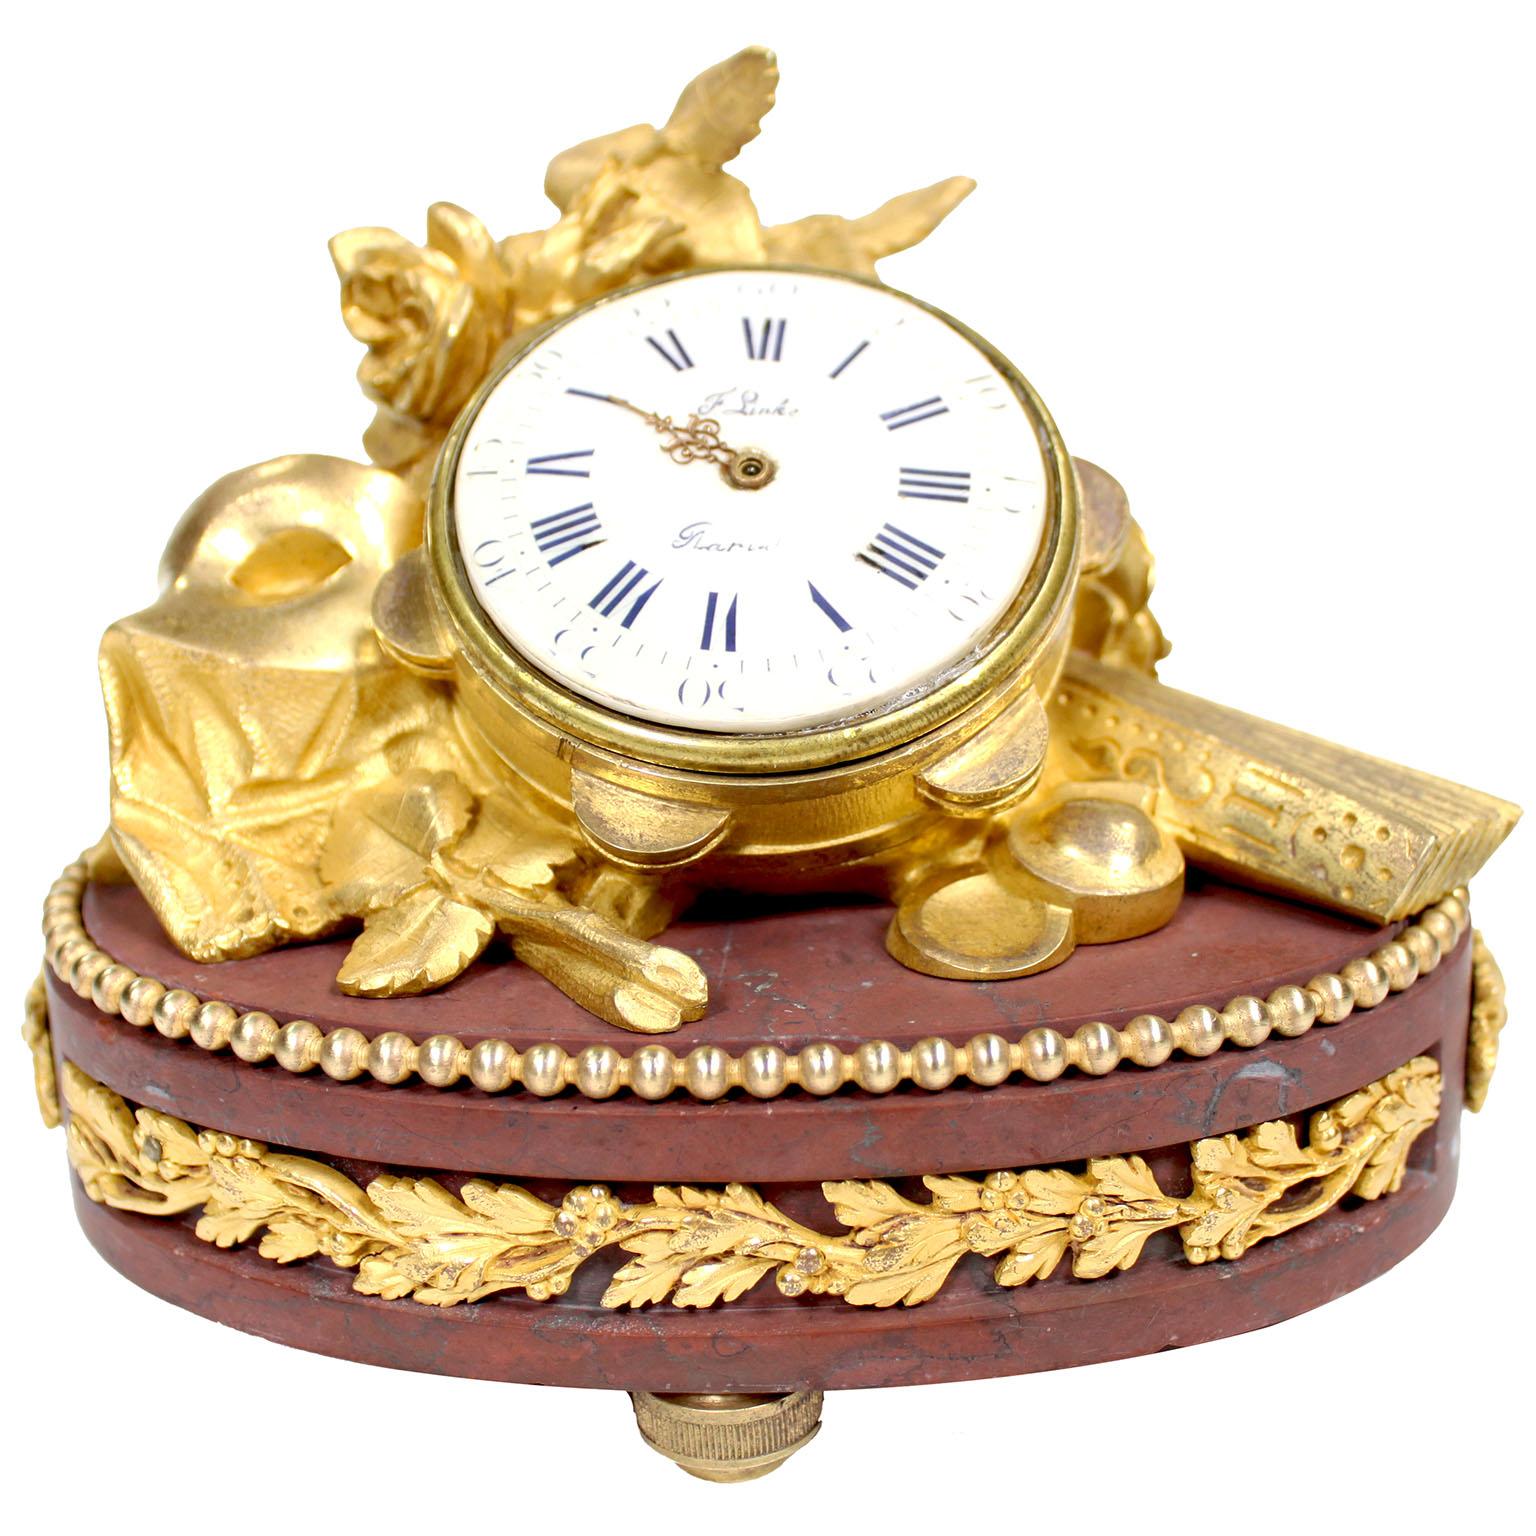 Feine französische Tischuhr der Belle Époque des 19. Jahrhunderts aus vergoldeter Bronze und rotem Griotte-Marmor von François Linke (1855-1946) Indexnummer 86. Das Uhrengehäuse in Form eines Tamburins inmitten blühender Rosen, einer Maske und eines